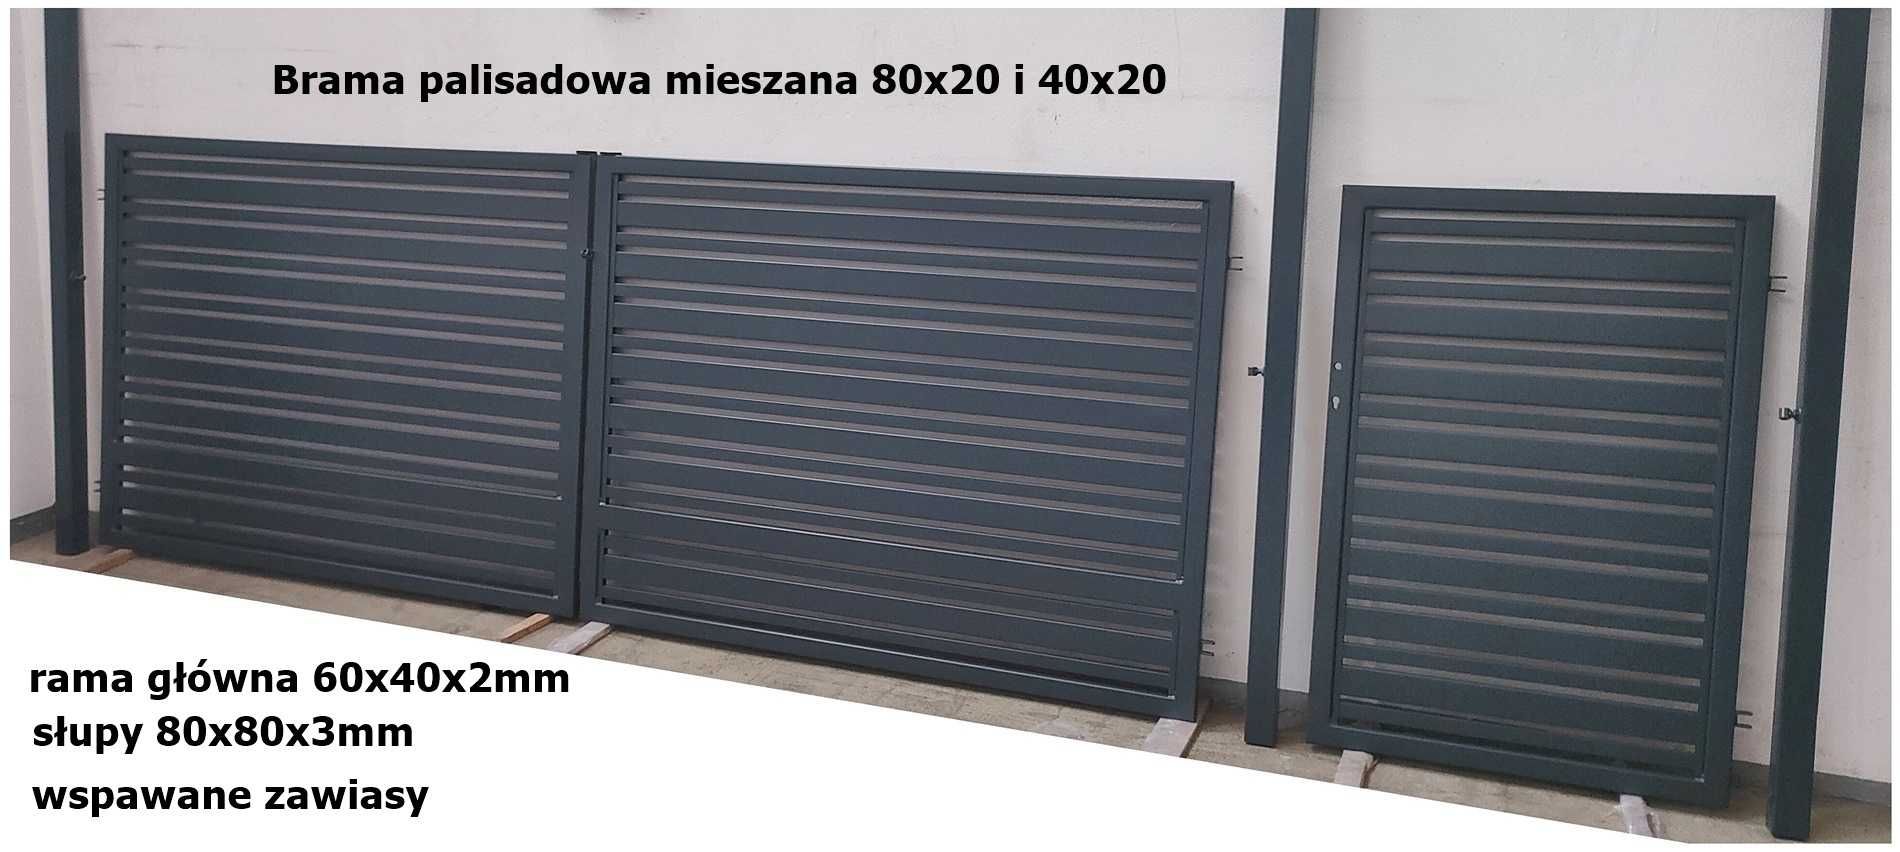 Brama dwuskrzydłowa palisada 4x1,5 +furtka 1x1,5 w komplecie monterski